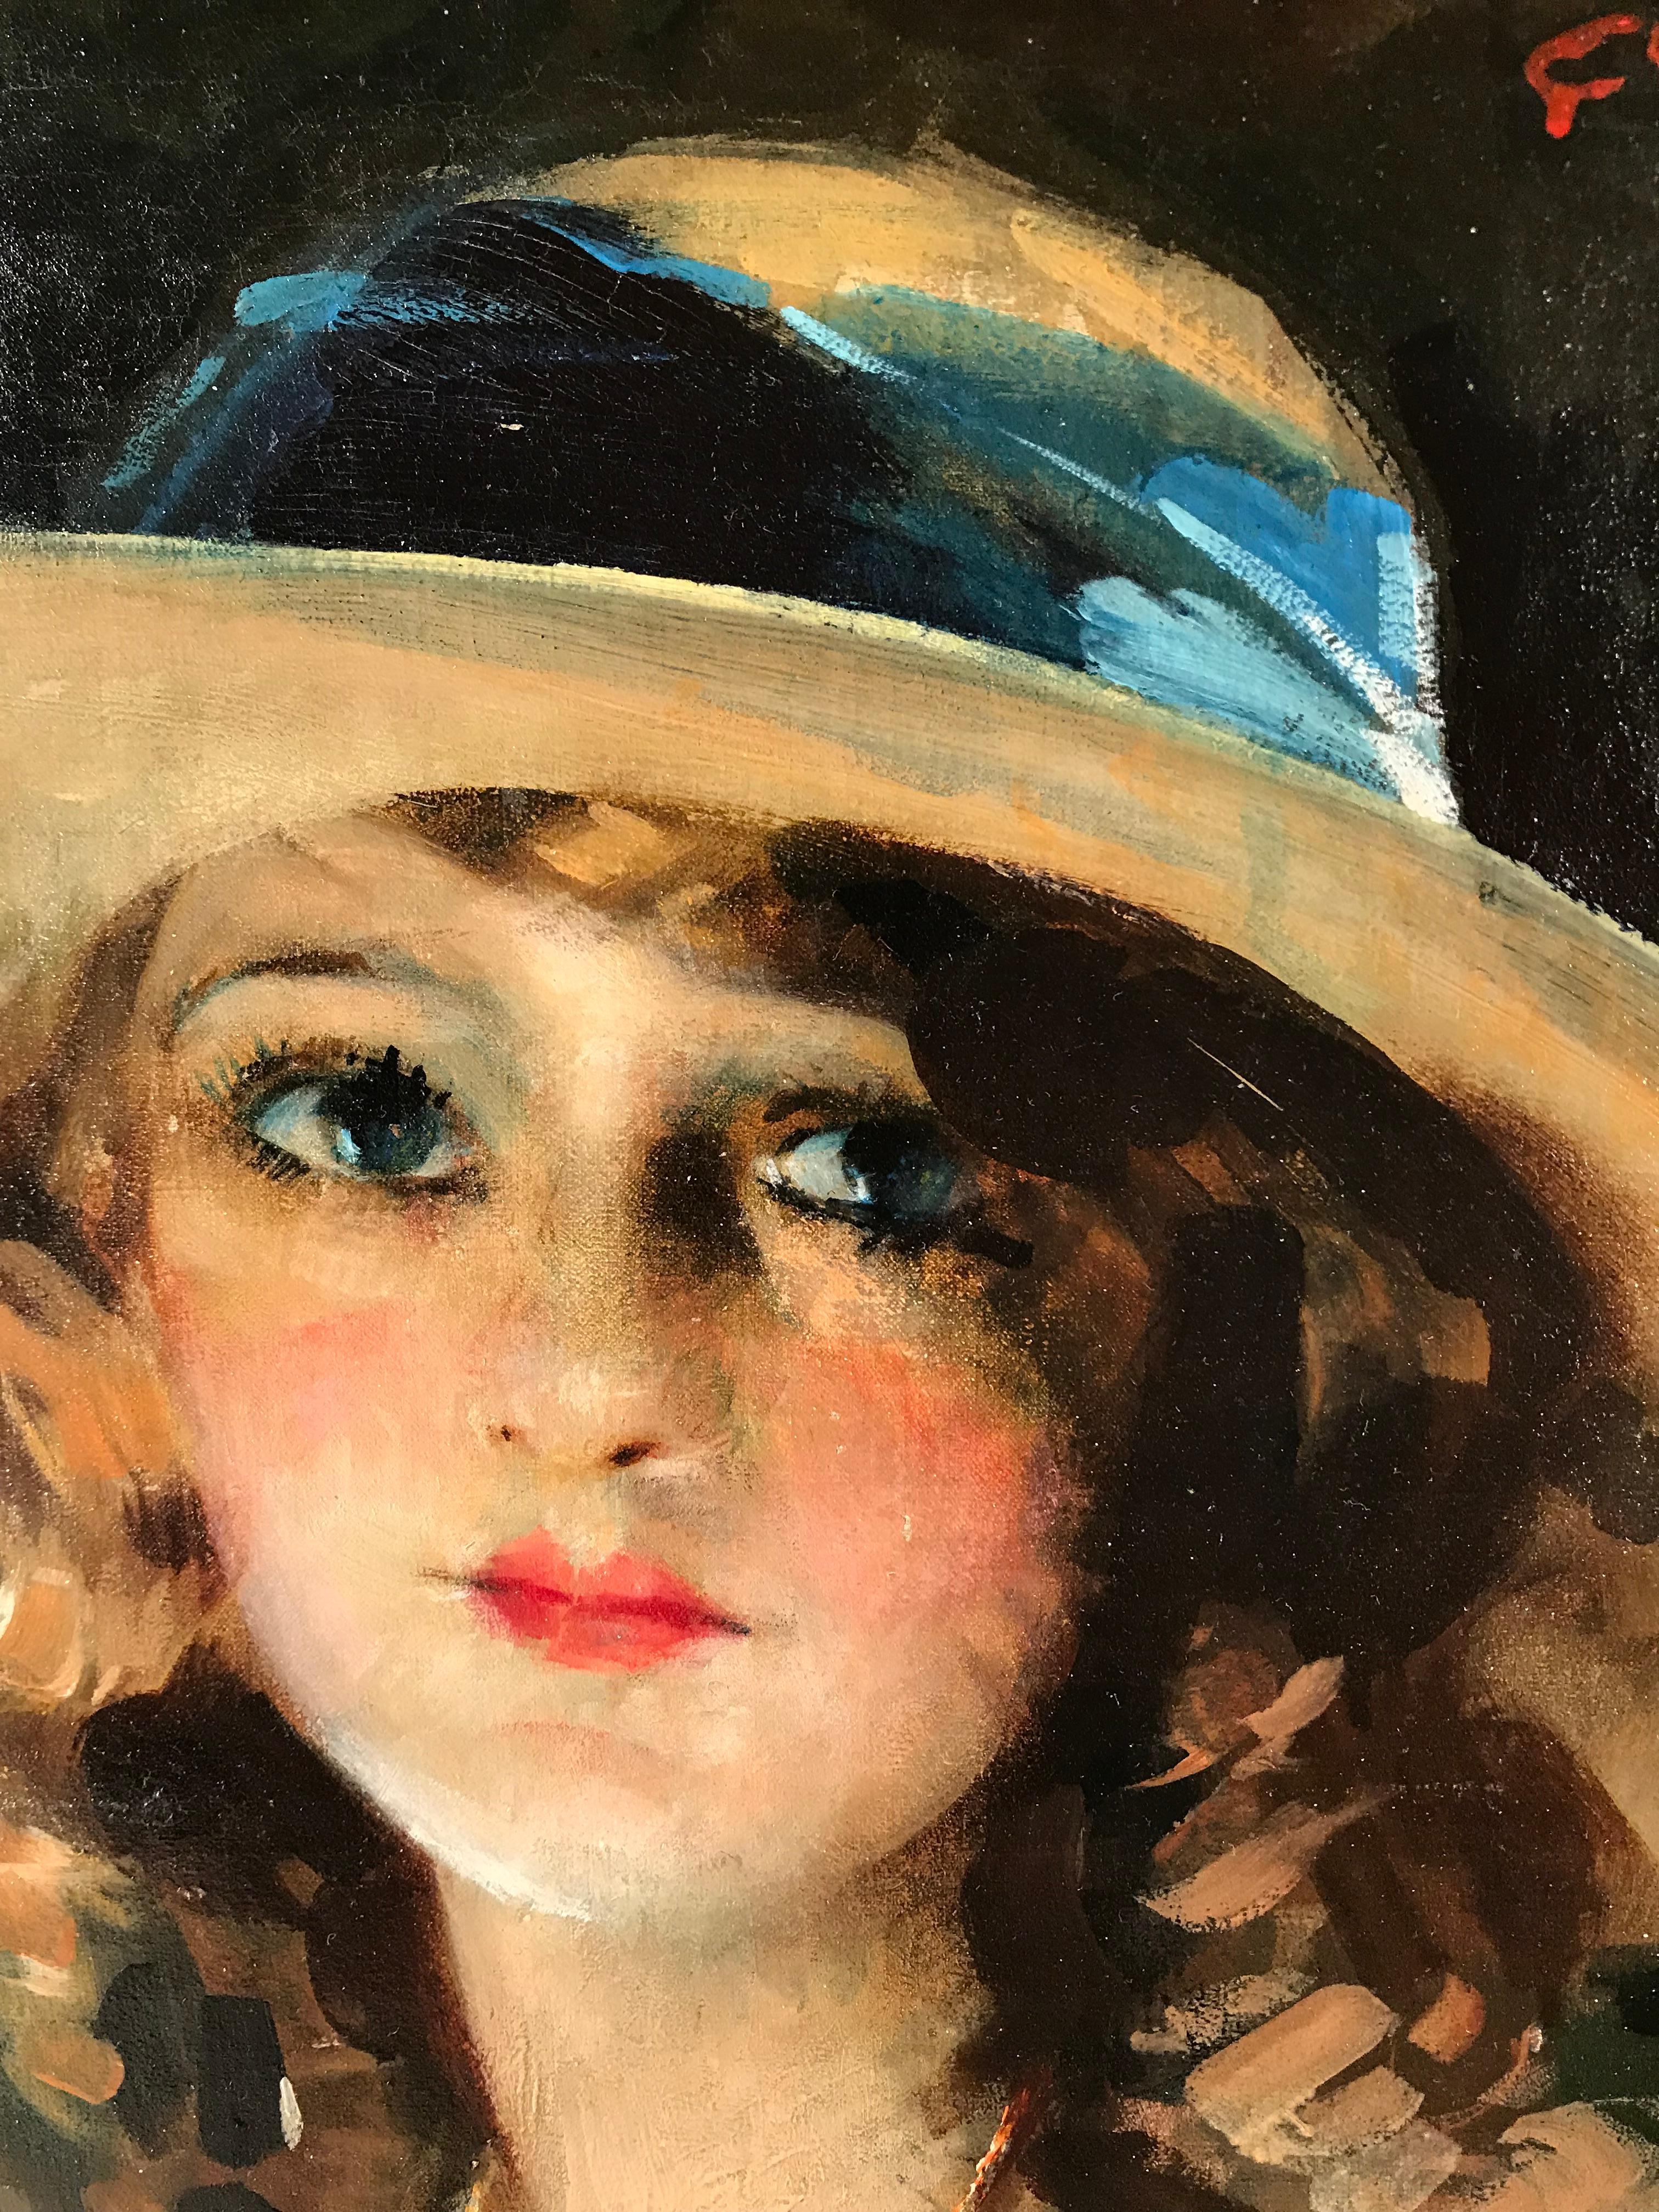 Charles Joseph Watelet (peintre belge 1867-1954),
Portrait d'une jeune femme appelée Daisy, huile sur toile. Encadré dans un magnifique cadre en bois doré sculpté à la main.